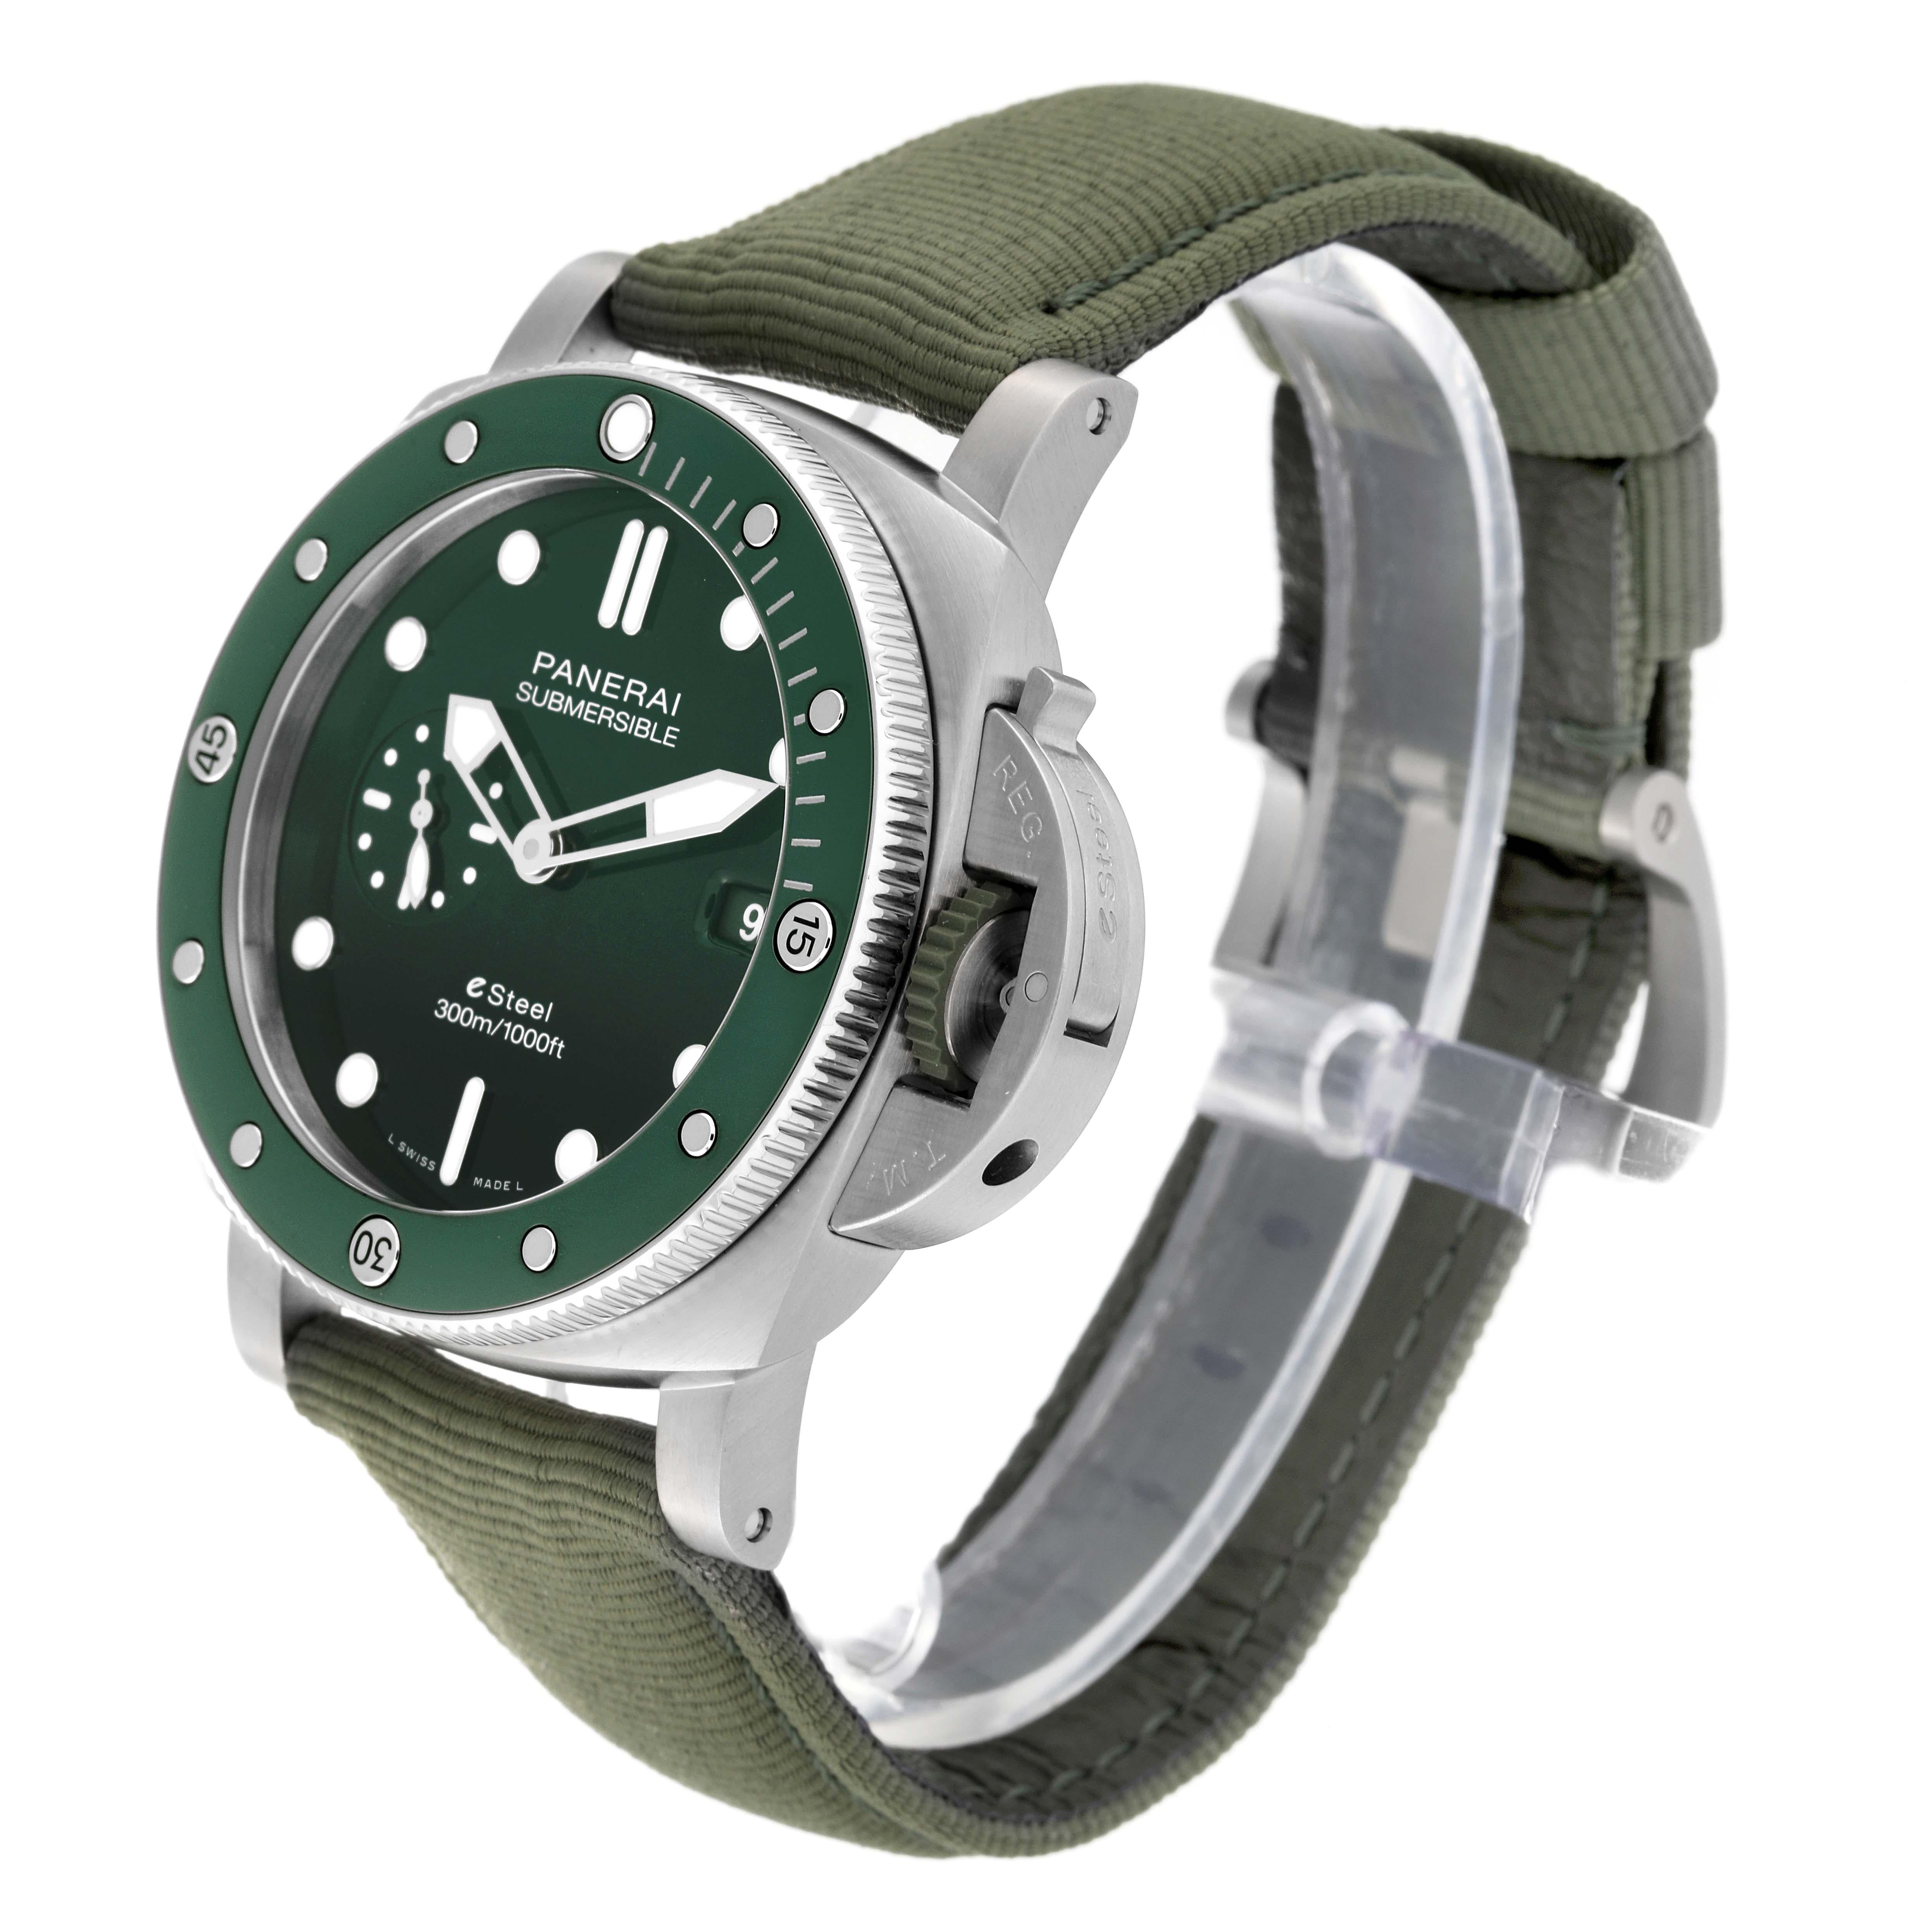 Panerai Submersible QuarantaQuattro Verde Smeraldo Steel Watch PAM01287 Unworn 7